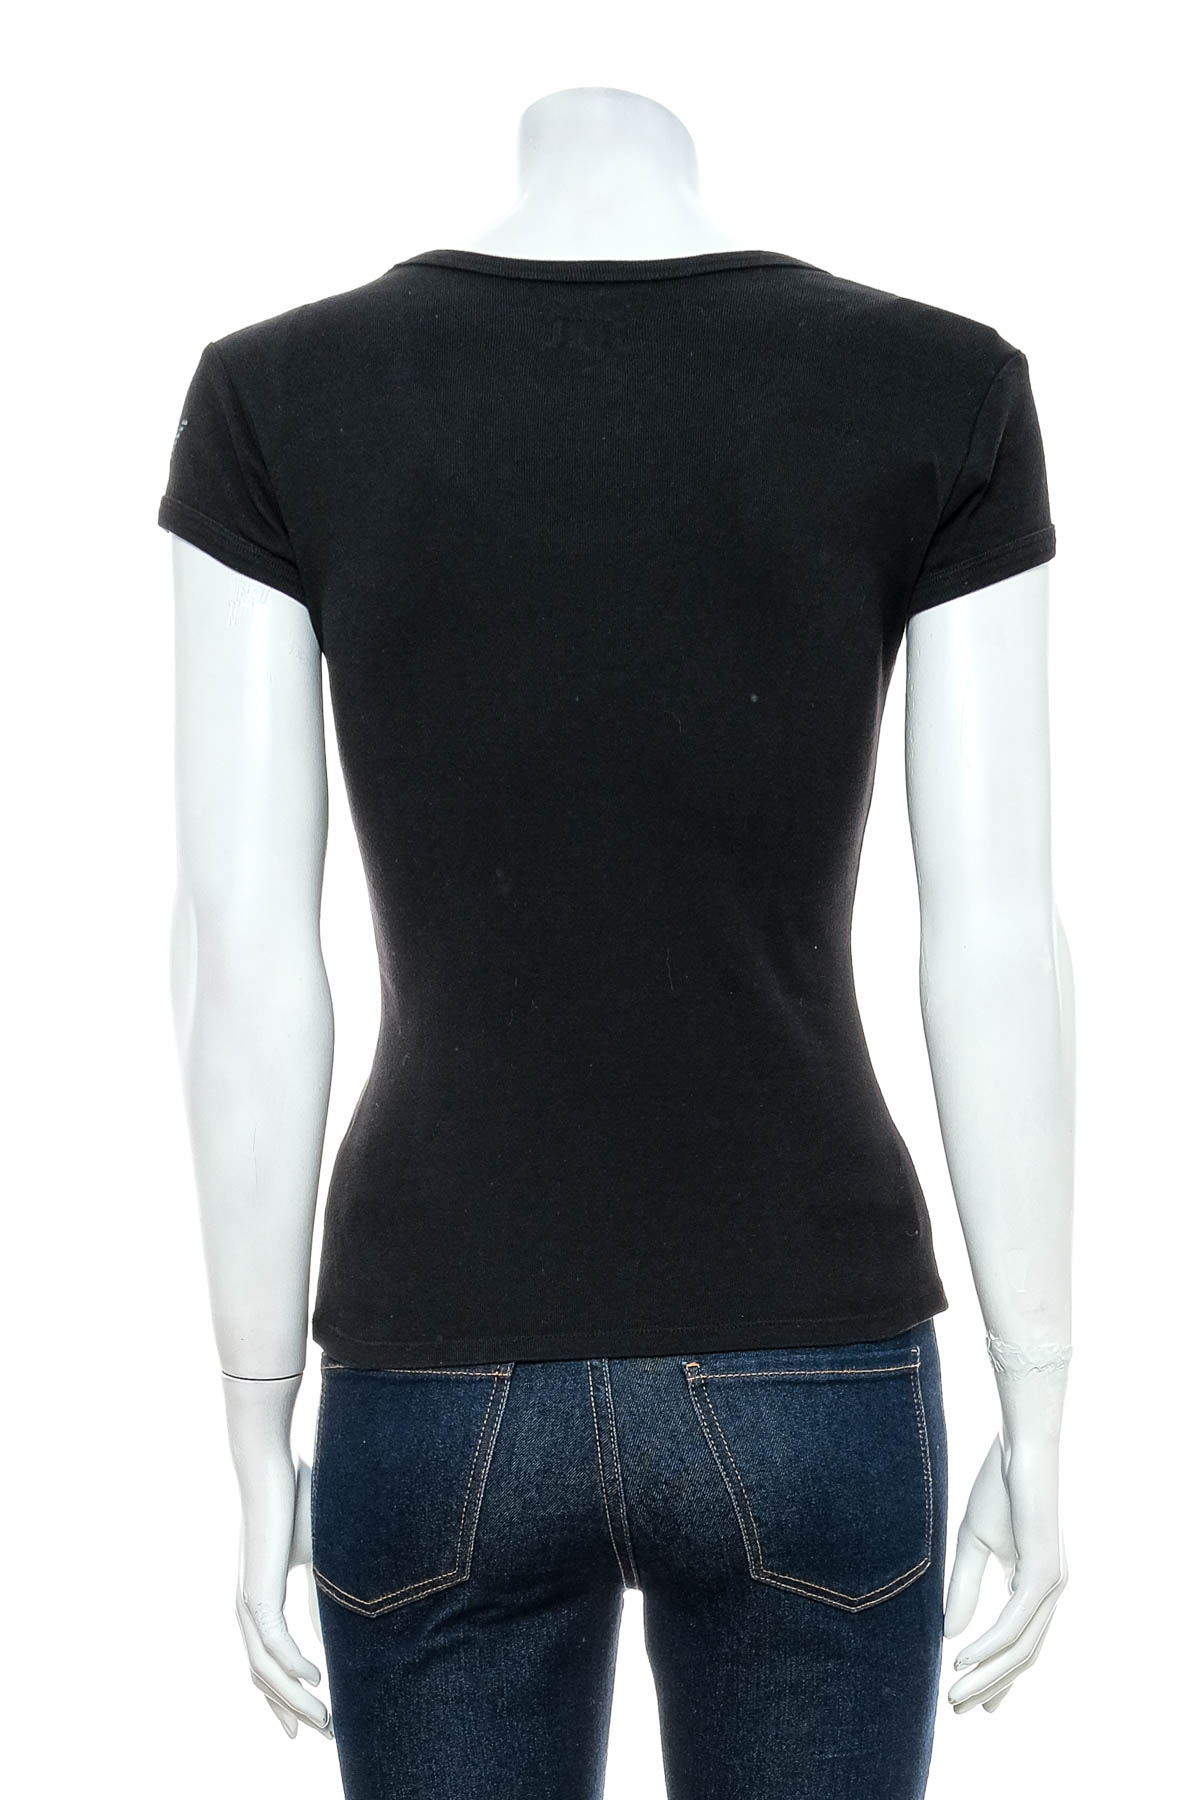 Дамска тениска - Armani Jeans - 1